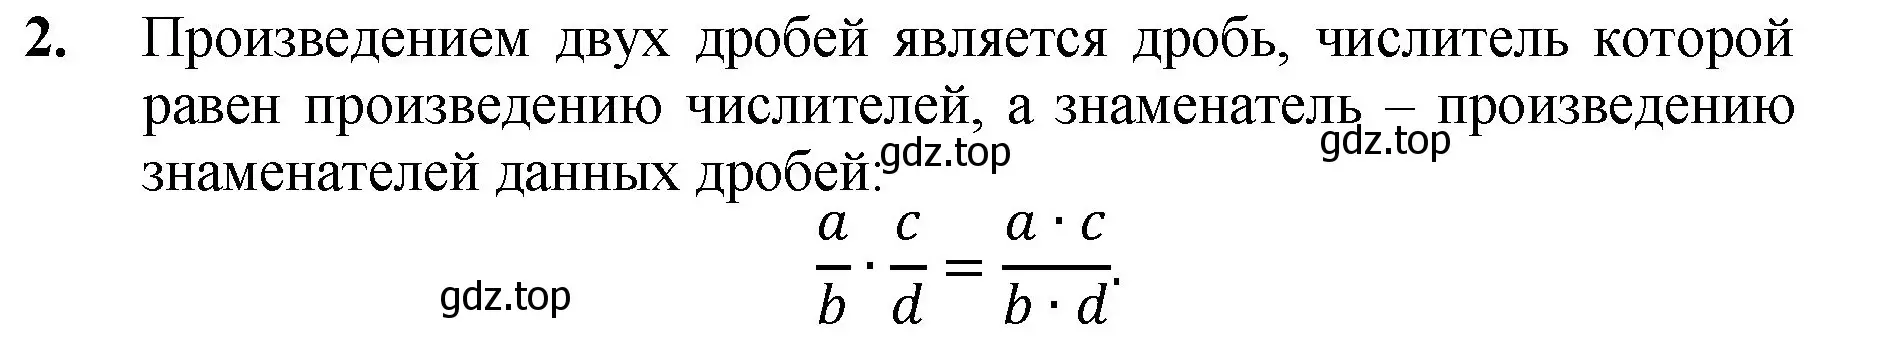 Решение номер 2 (страница 239) гдз по математике 5 класс Мерзляк, Полонский, учебник